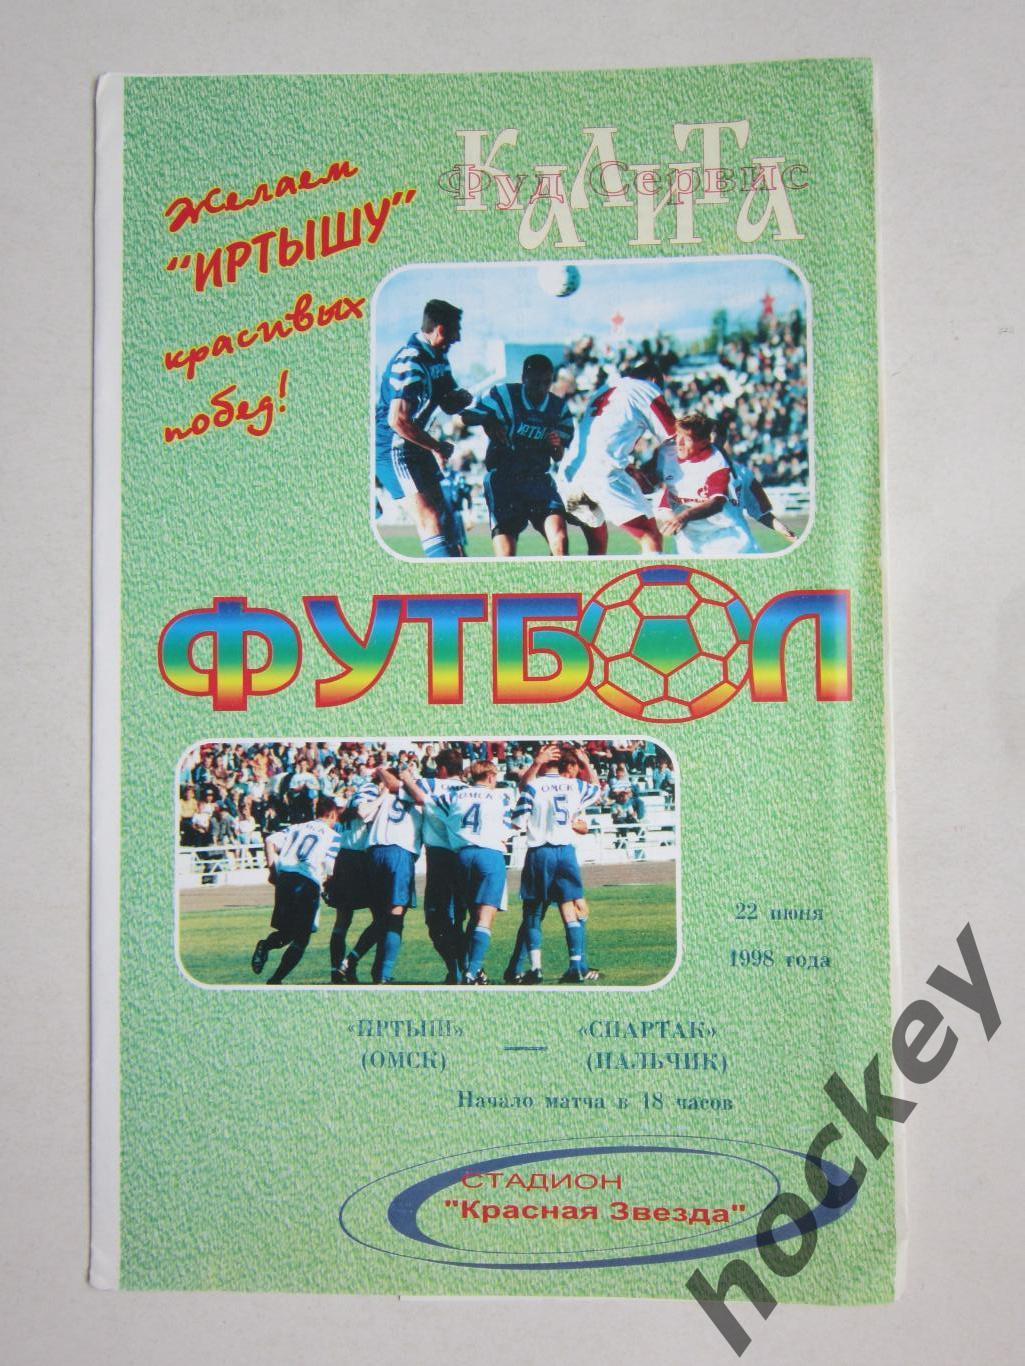 Иртыш Омск - Спартак Нальчик 22.06.1998